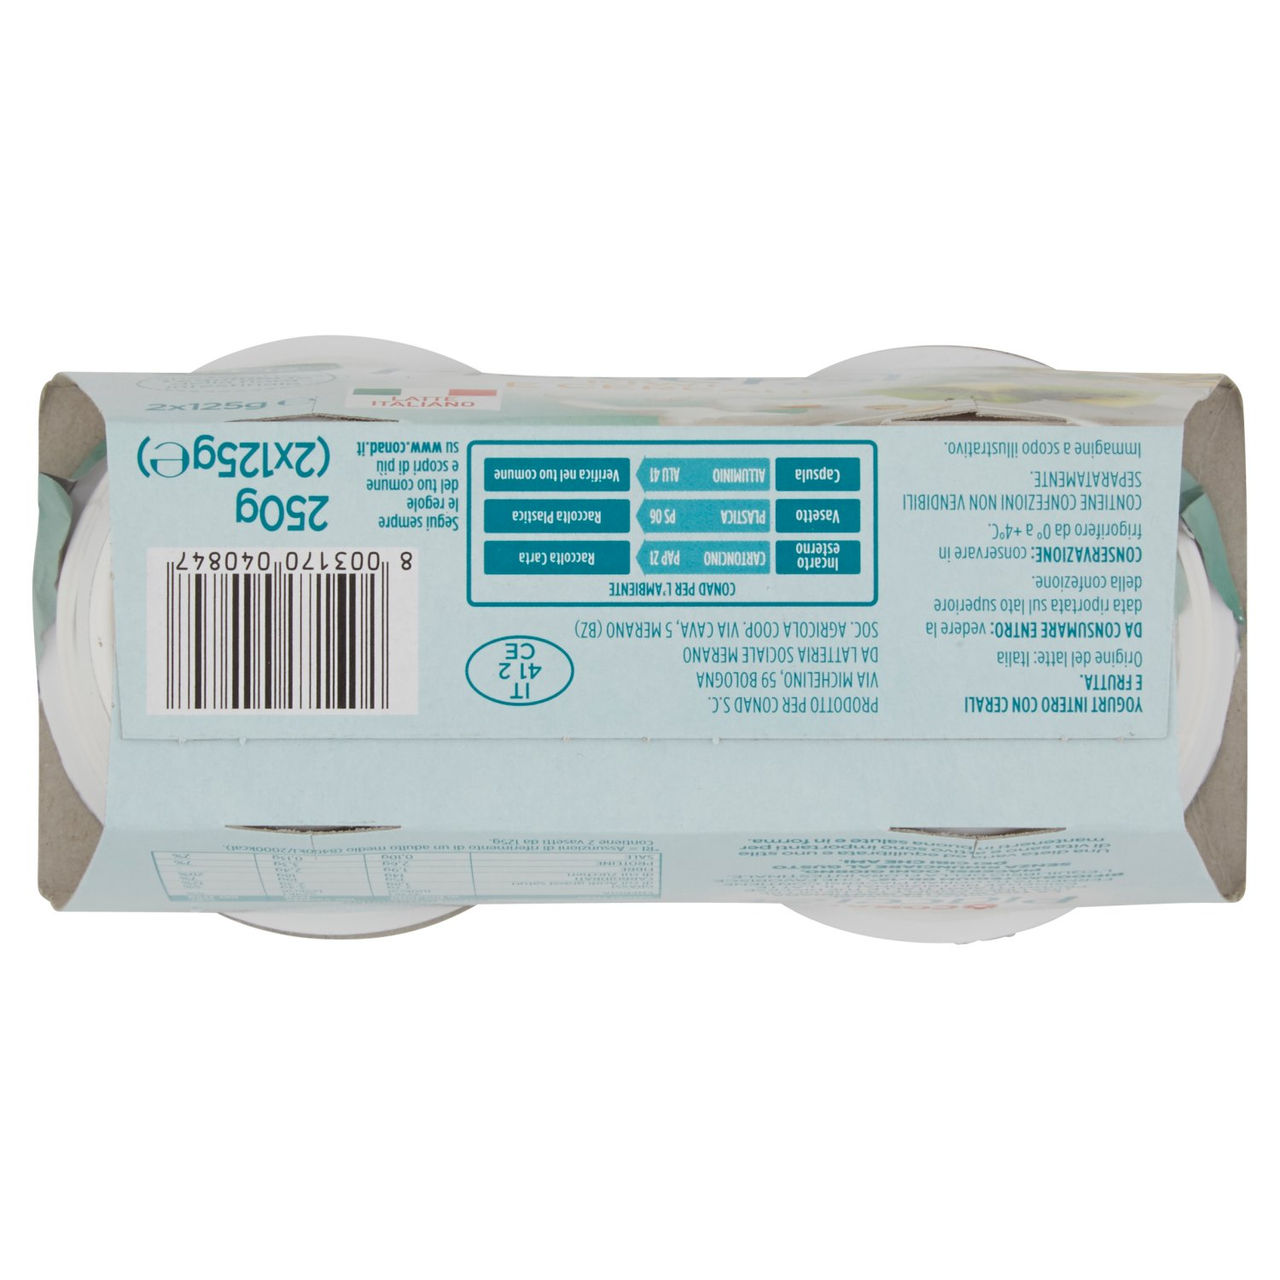 Yogurt Intero Kiwi Cereali 2x125g Piacersi Conad